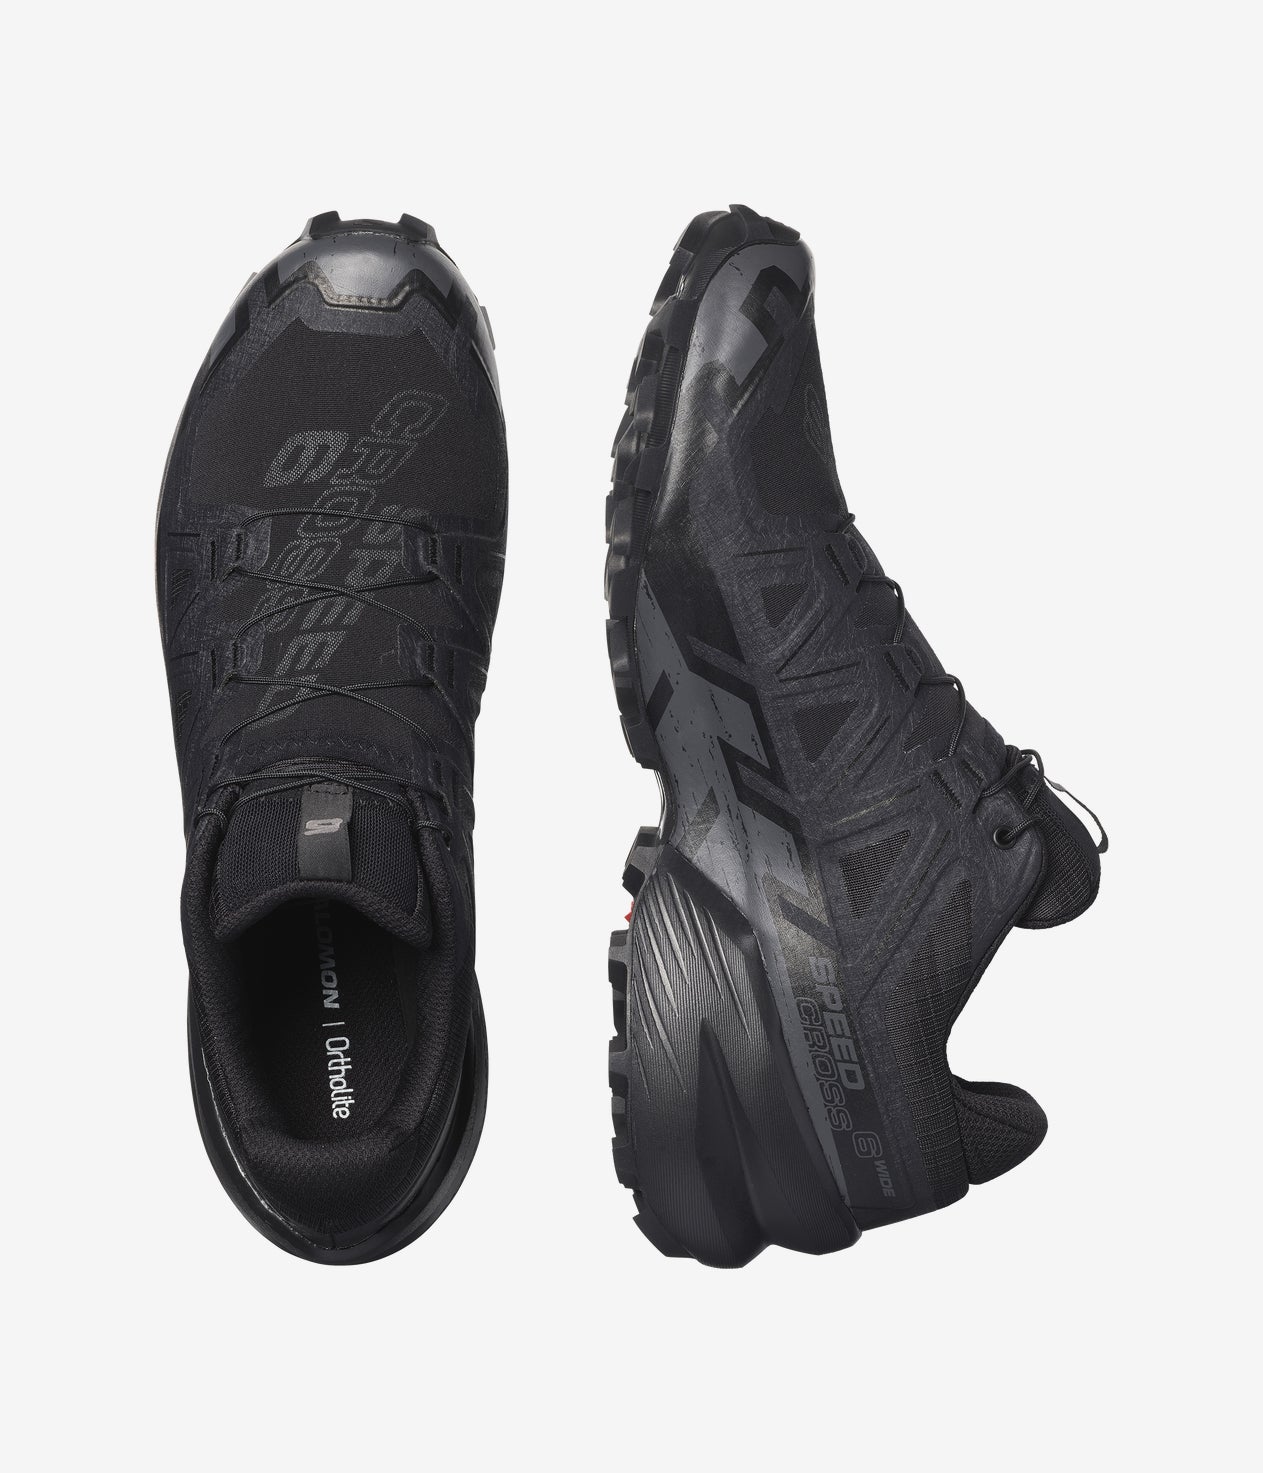 Salomon Speedcross 6 Men's Trail Running Shoes,Black